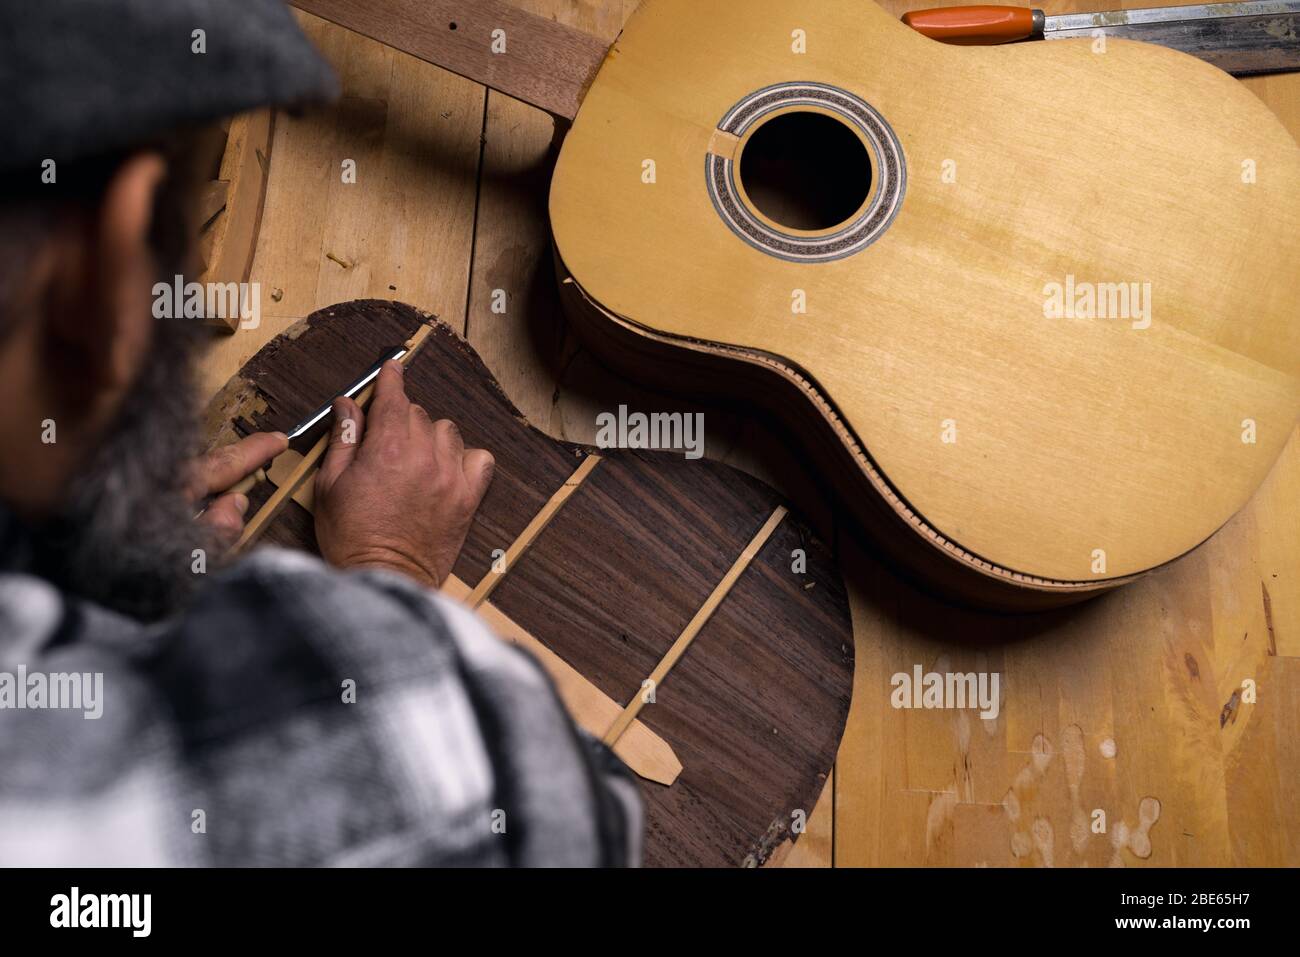 Luftaufnahme des Werkstatttisches des Gitarrenbauers. Handwerker debattieren Holz von der Rückseite der klassischen Palisander-Gitarre mit Gouge. Dunkelschwarzer Hintergrund. Stockfoto